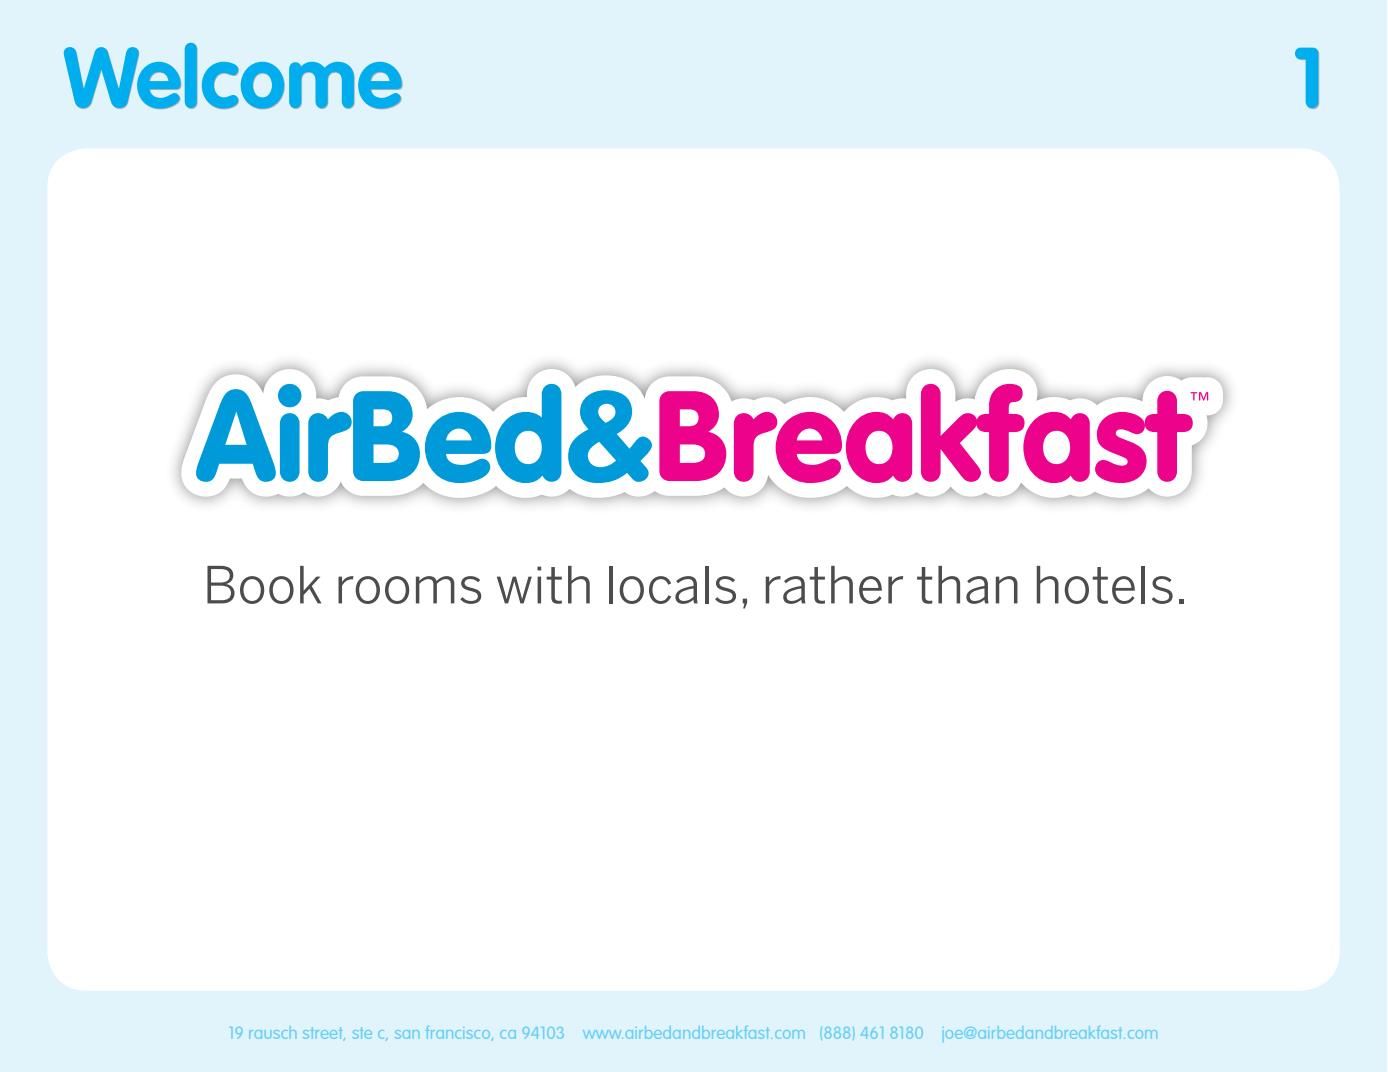 Airbnb种子轮融资BP